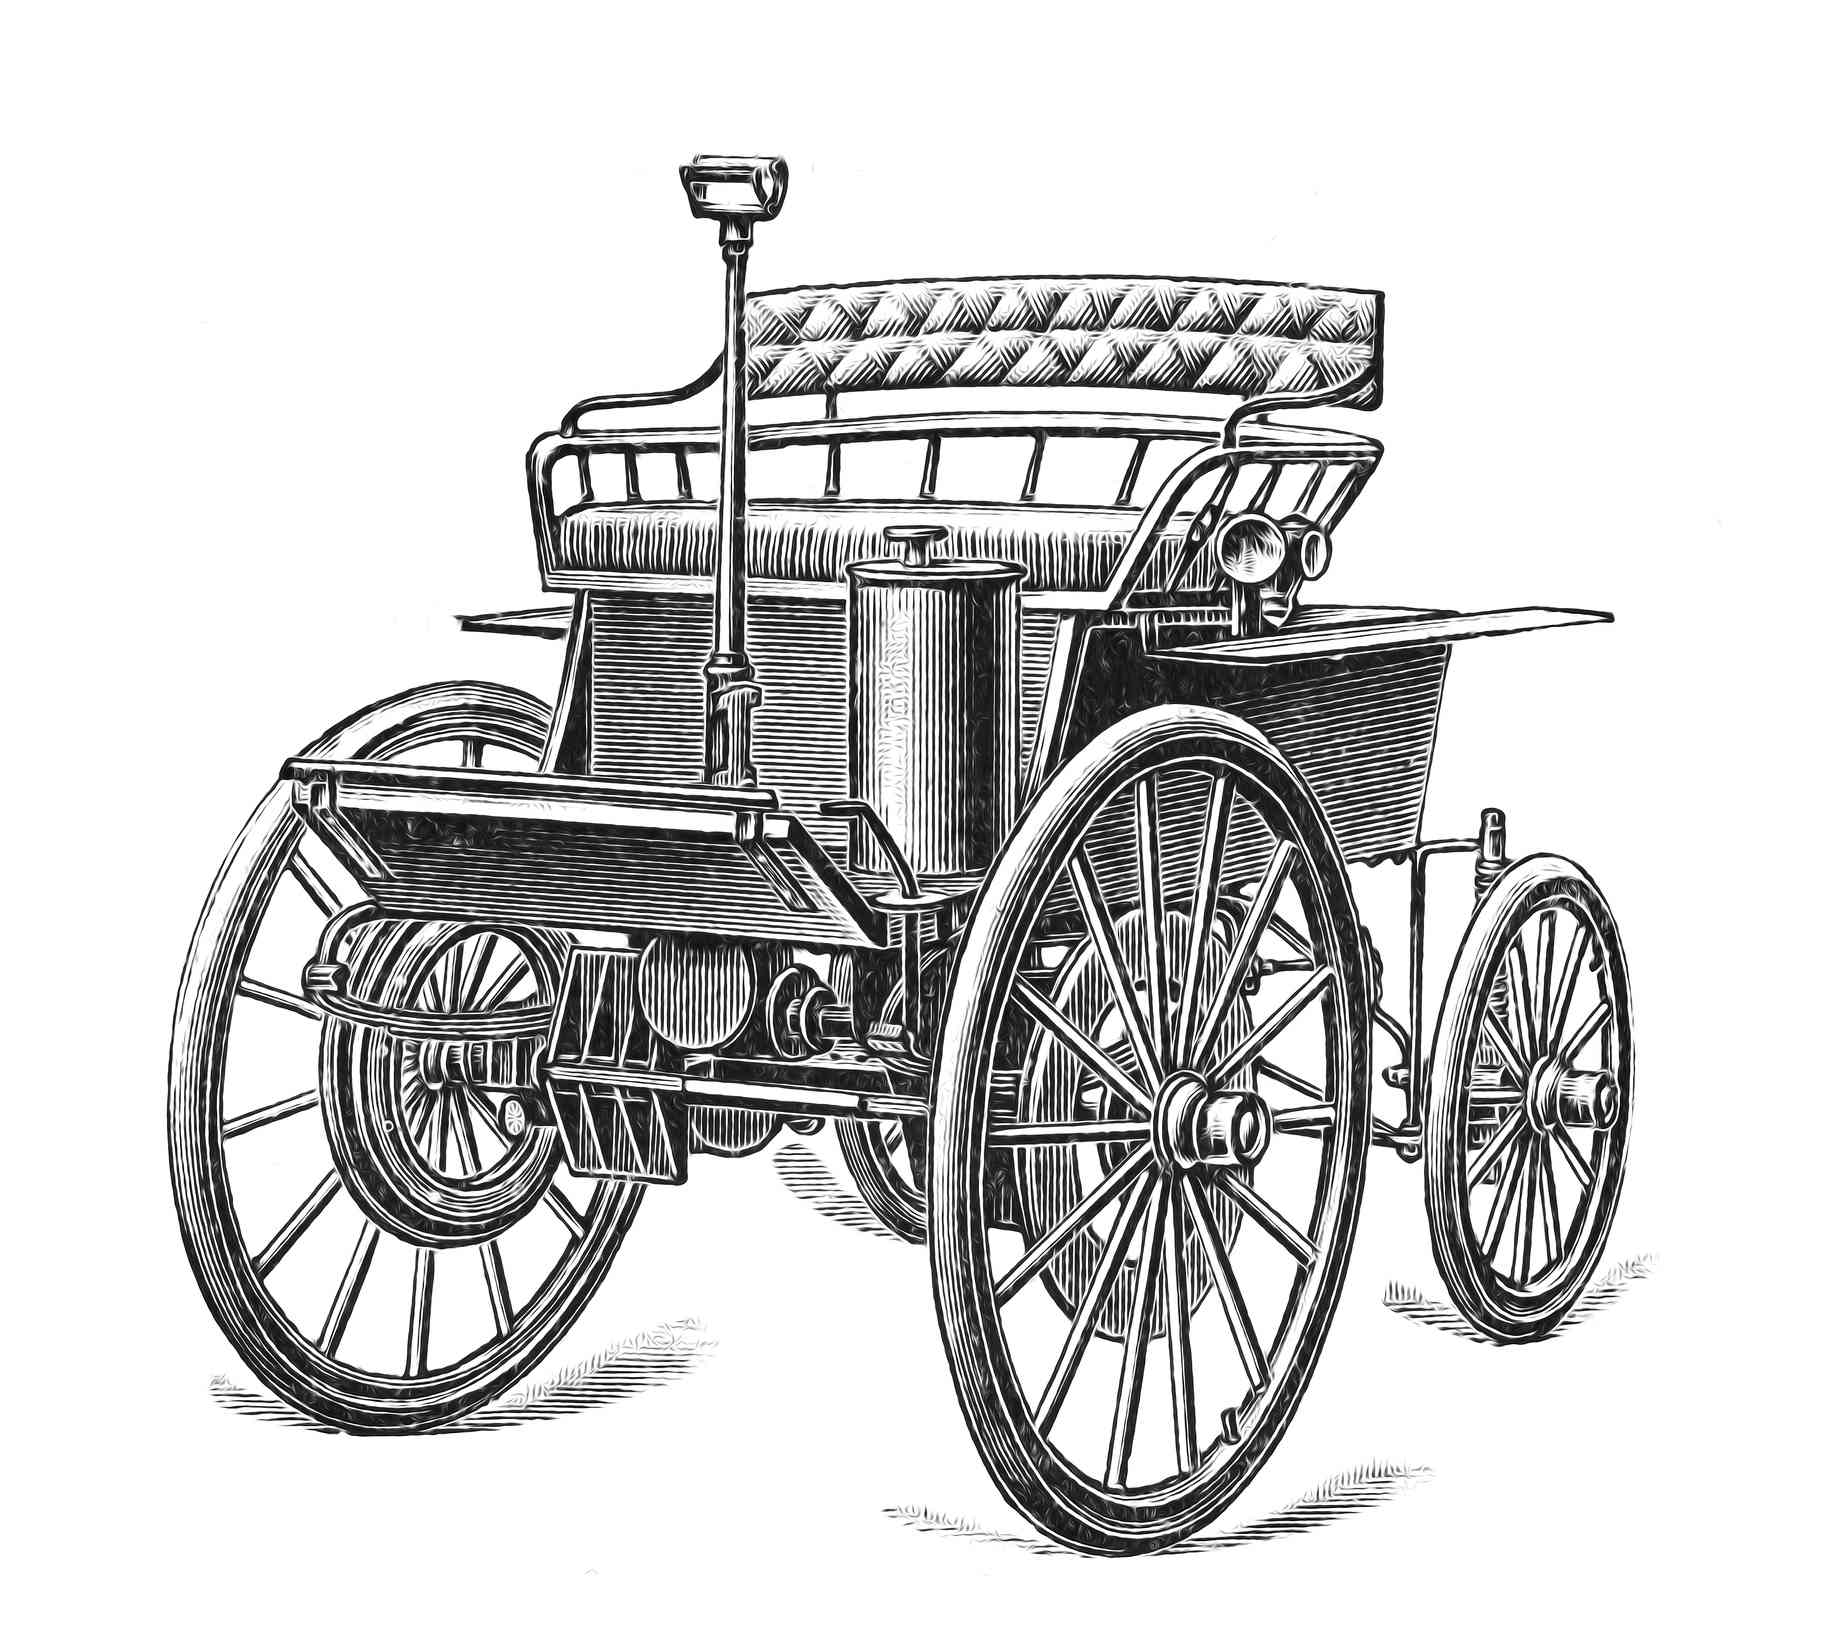 电动汽车是美国第一批电动汽车之一